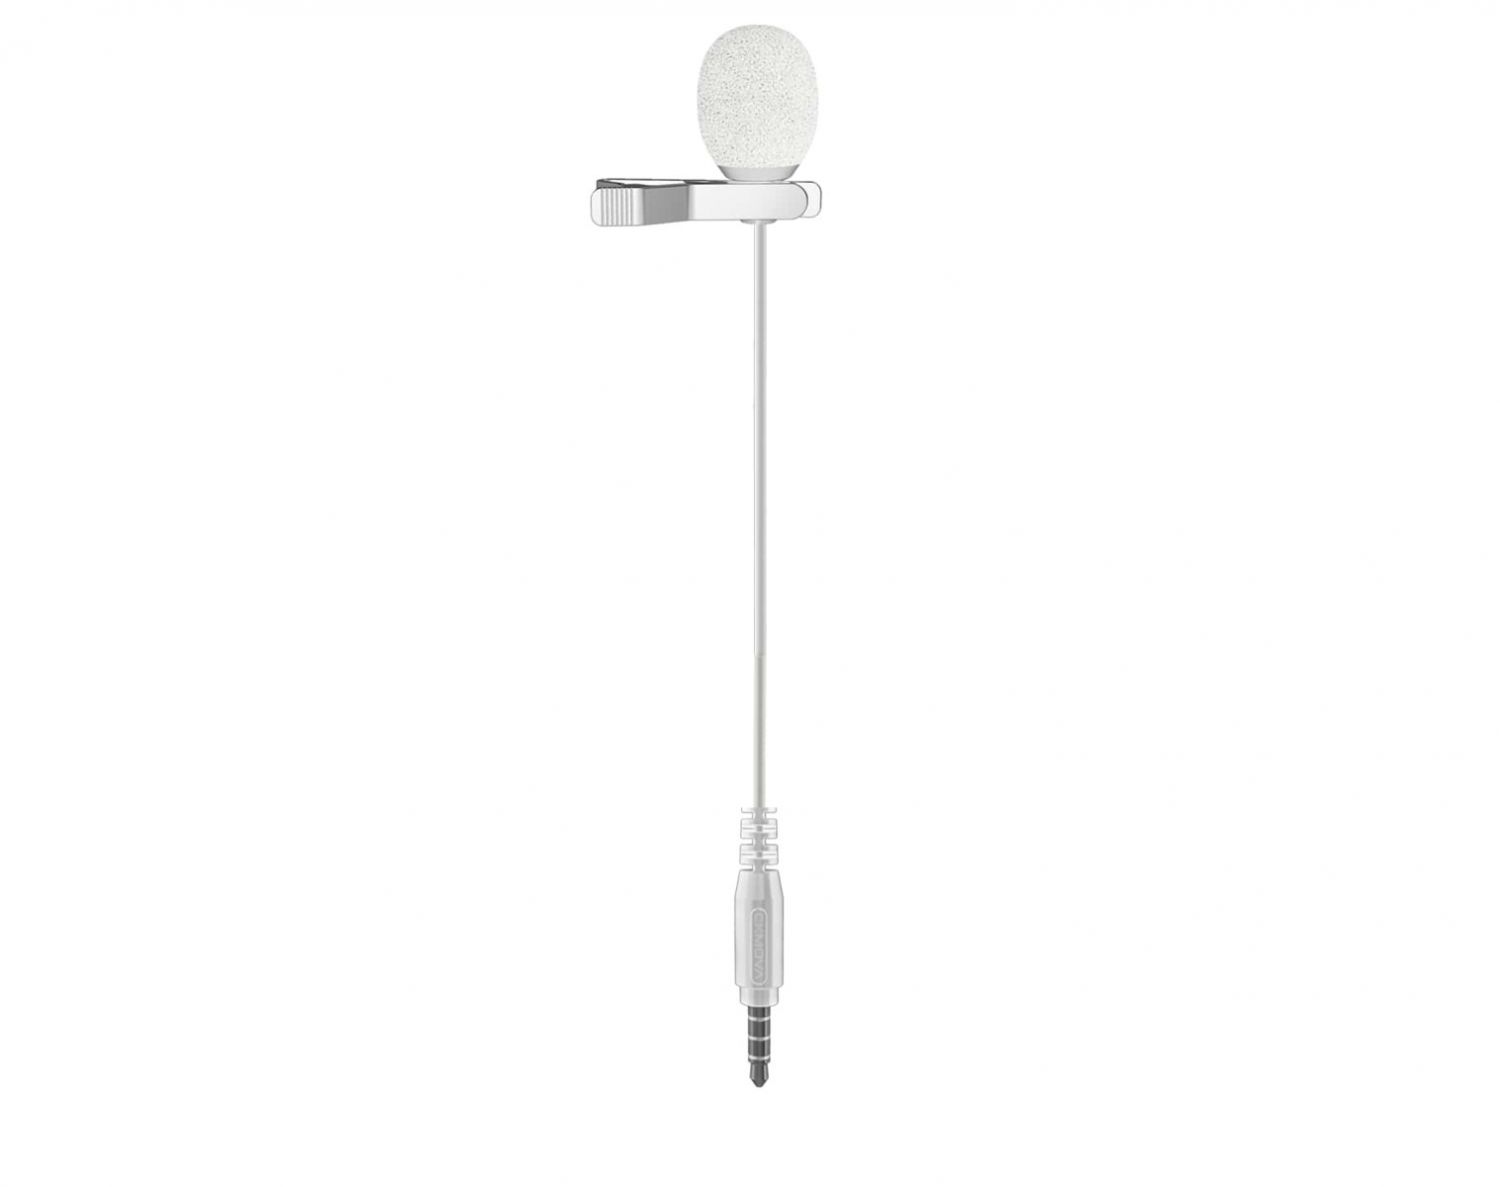 CKMOVA AC-VM1W - mikrofon lavalier w kolorze białym